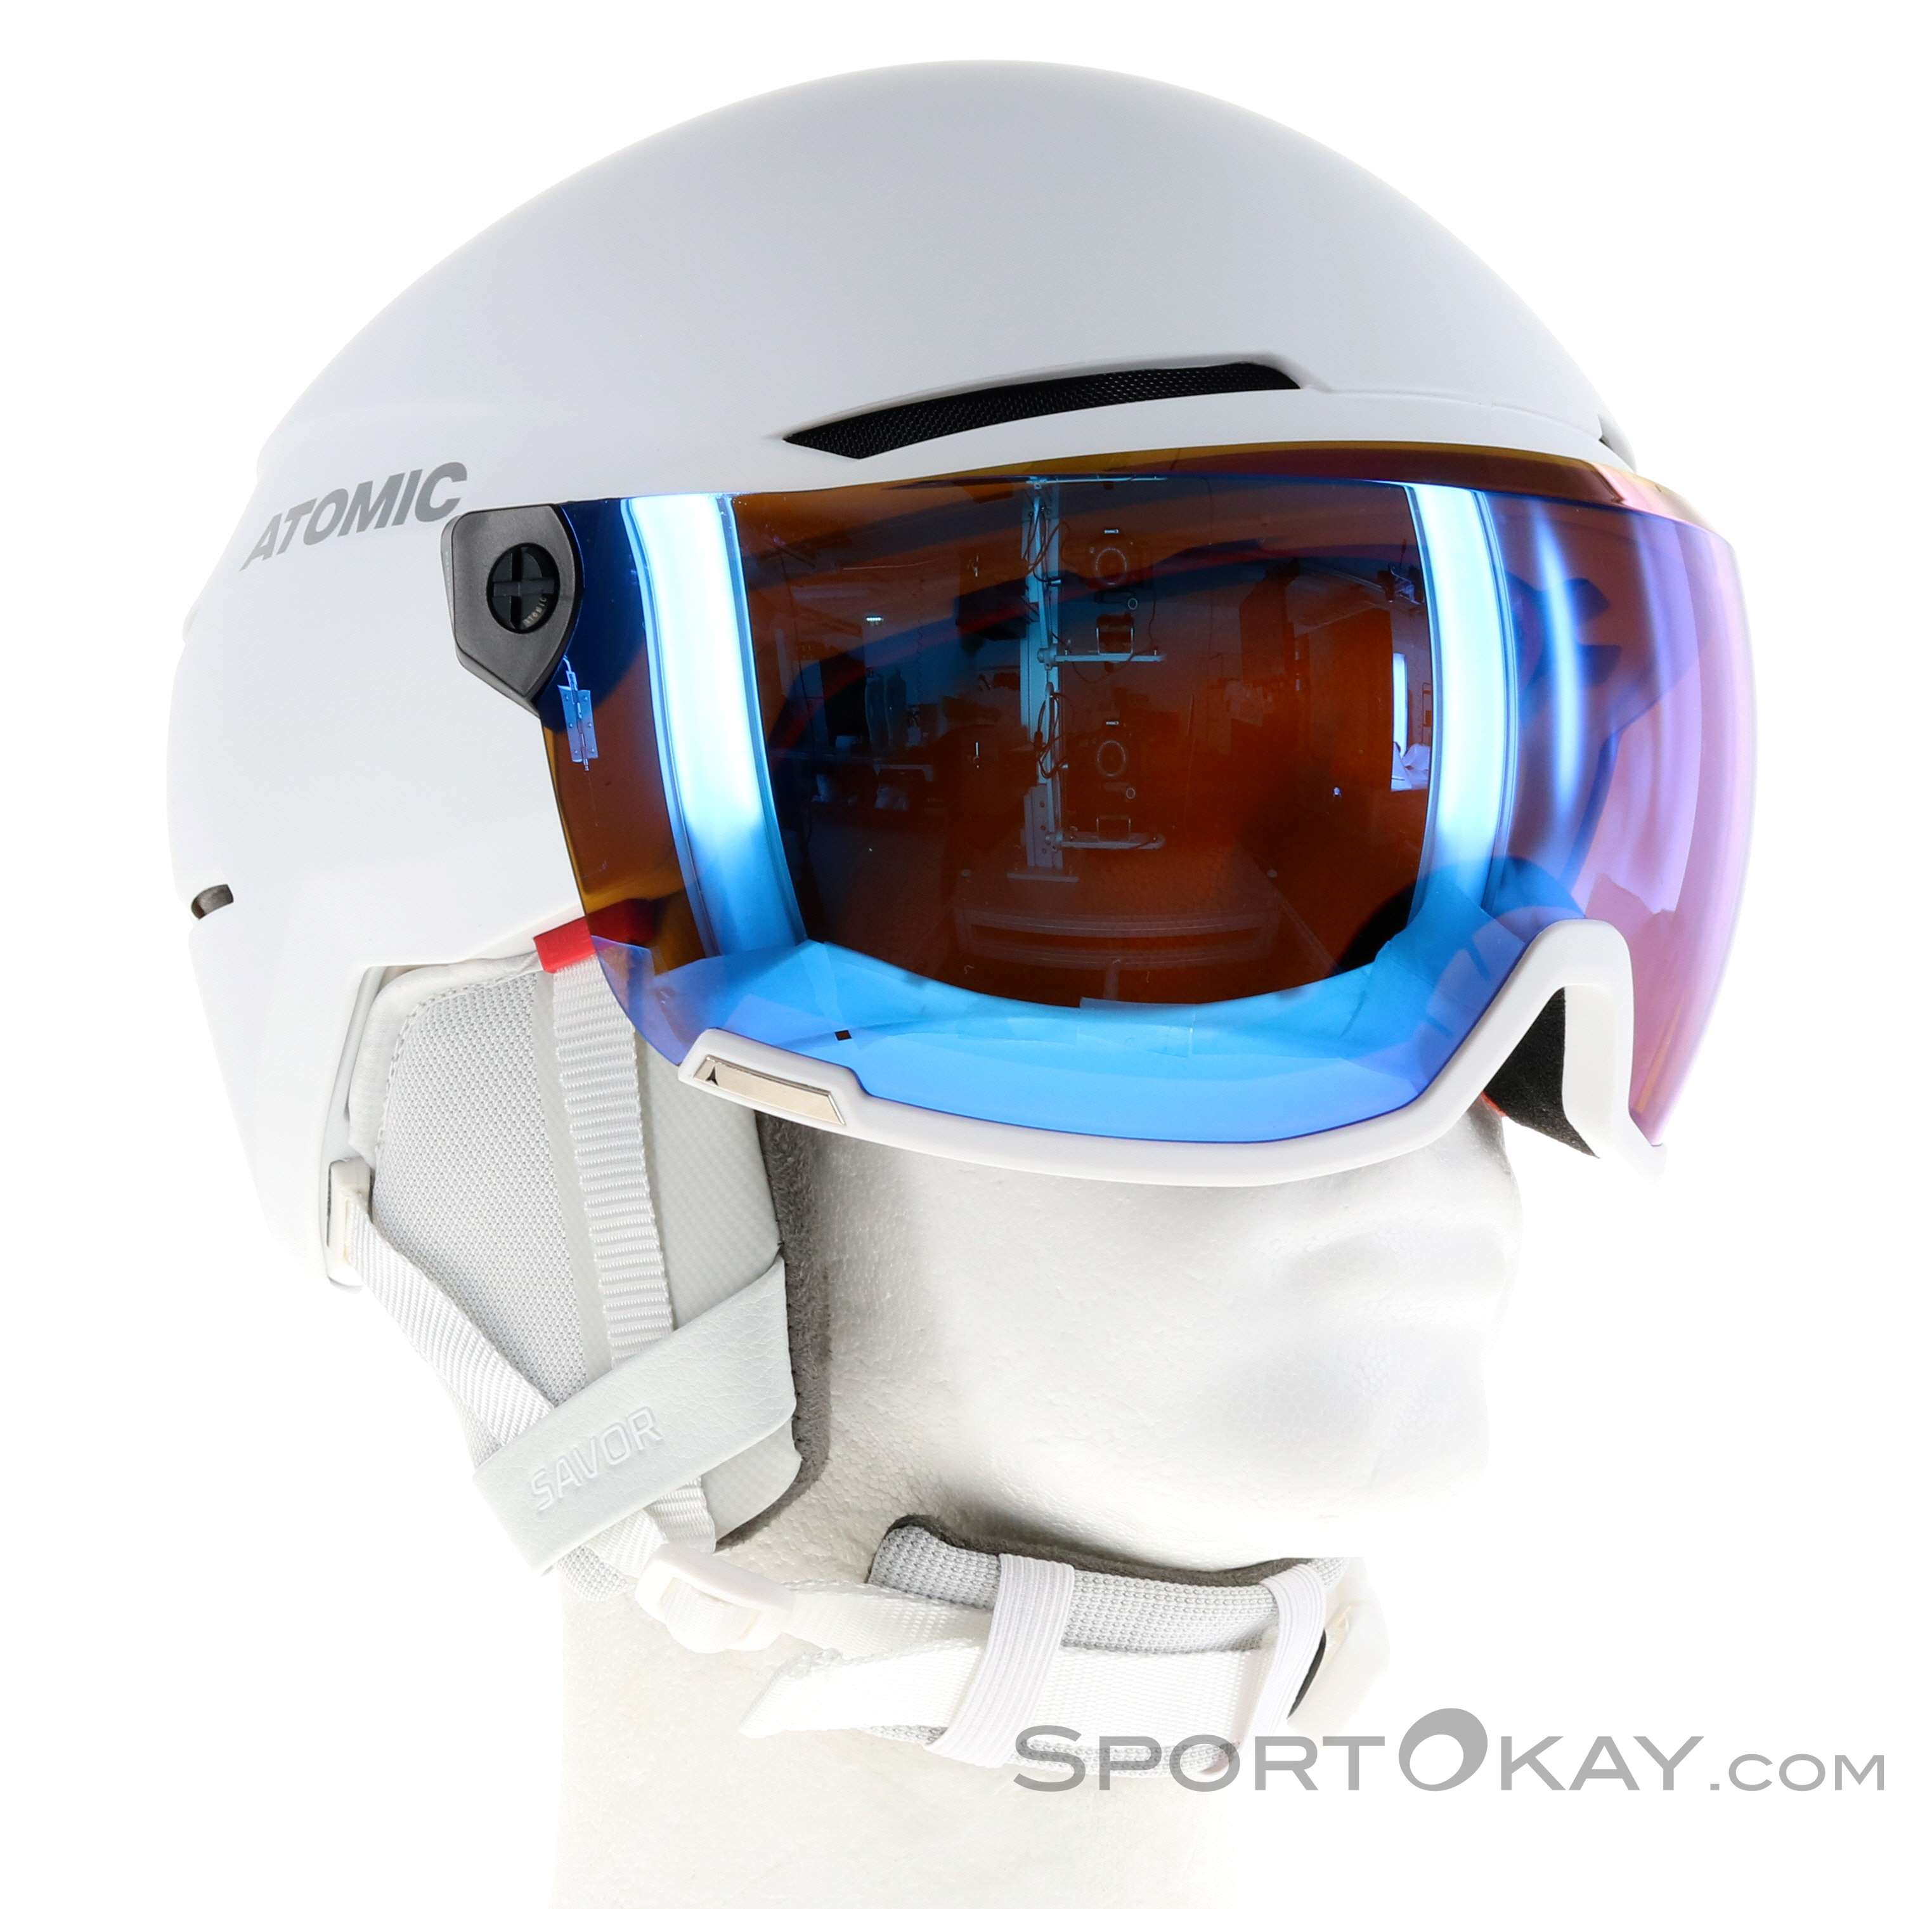 Atomic Savor Visor Stereo Casque de ski avec visière - Casques de